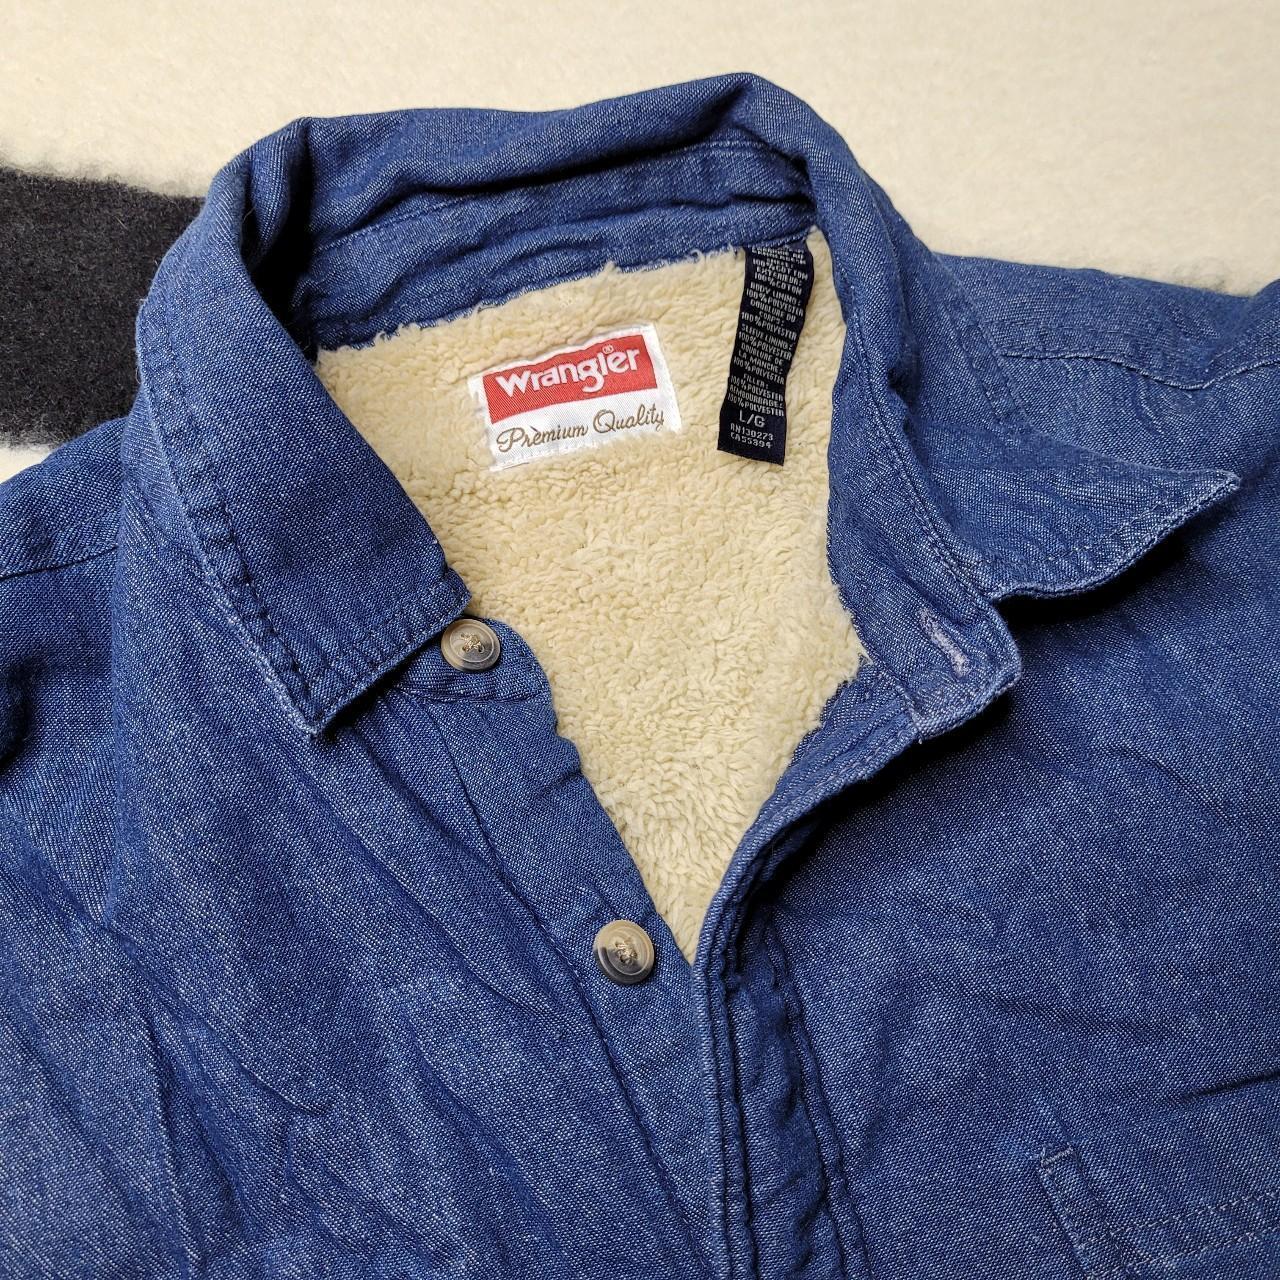 Vintage Blue Sherpa Lined Denim Work Jacket